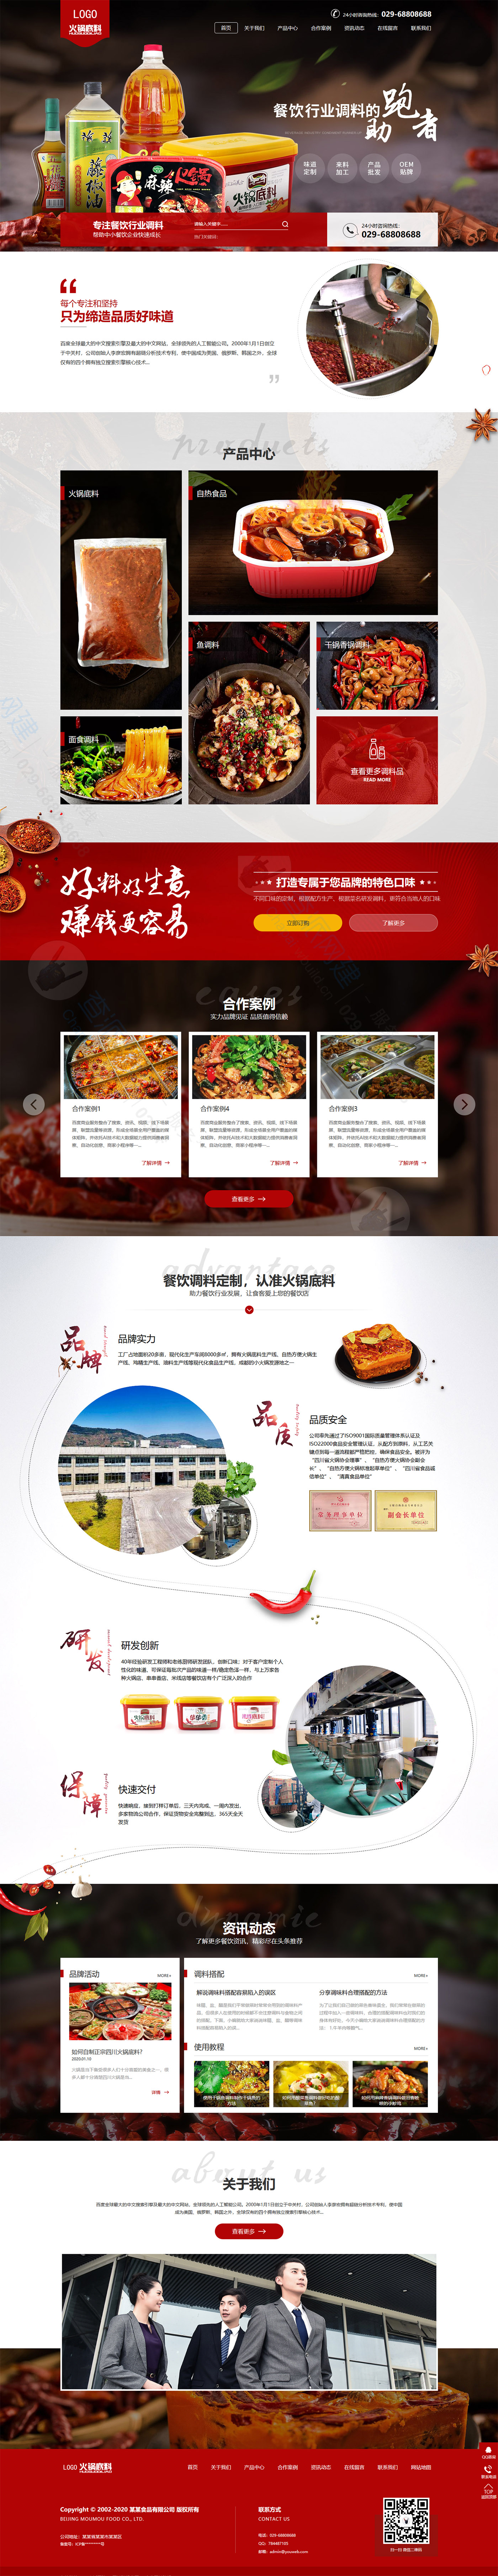 高端火锅底料餐饮调料食品营销型企业网站建设模板(自适应手机端)